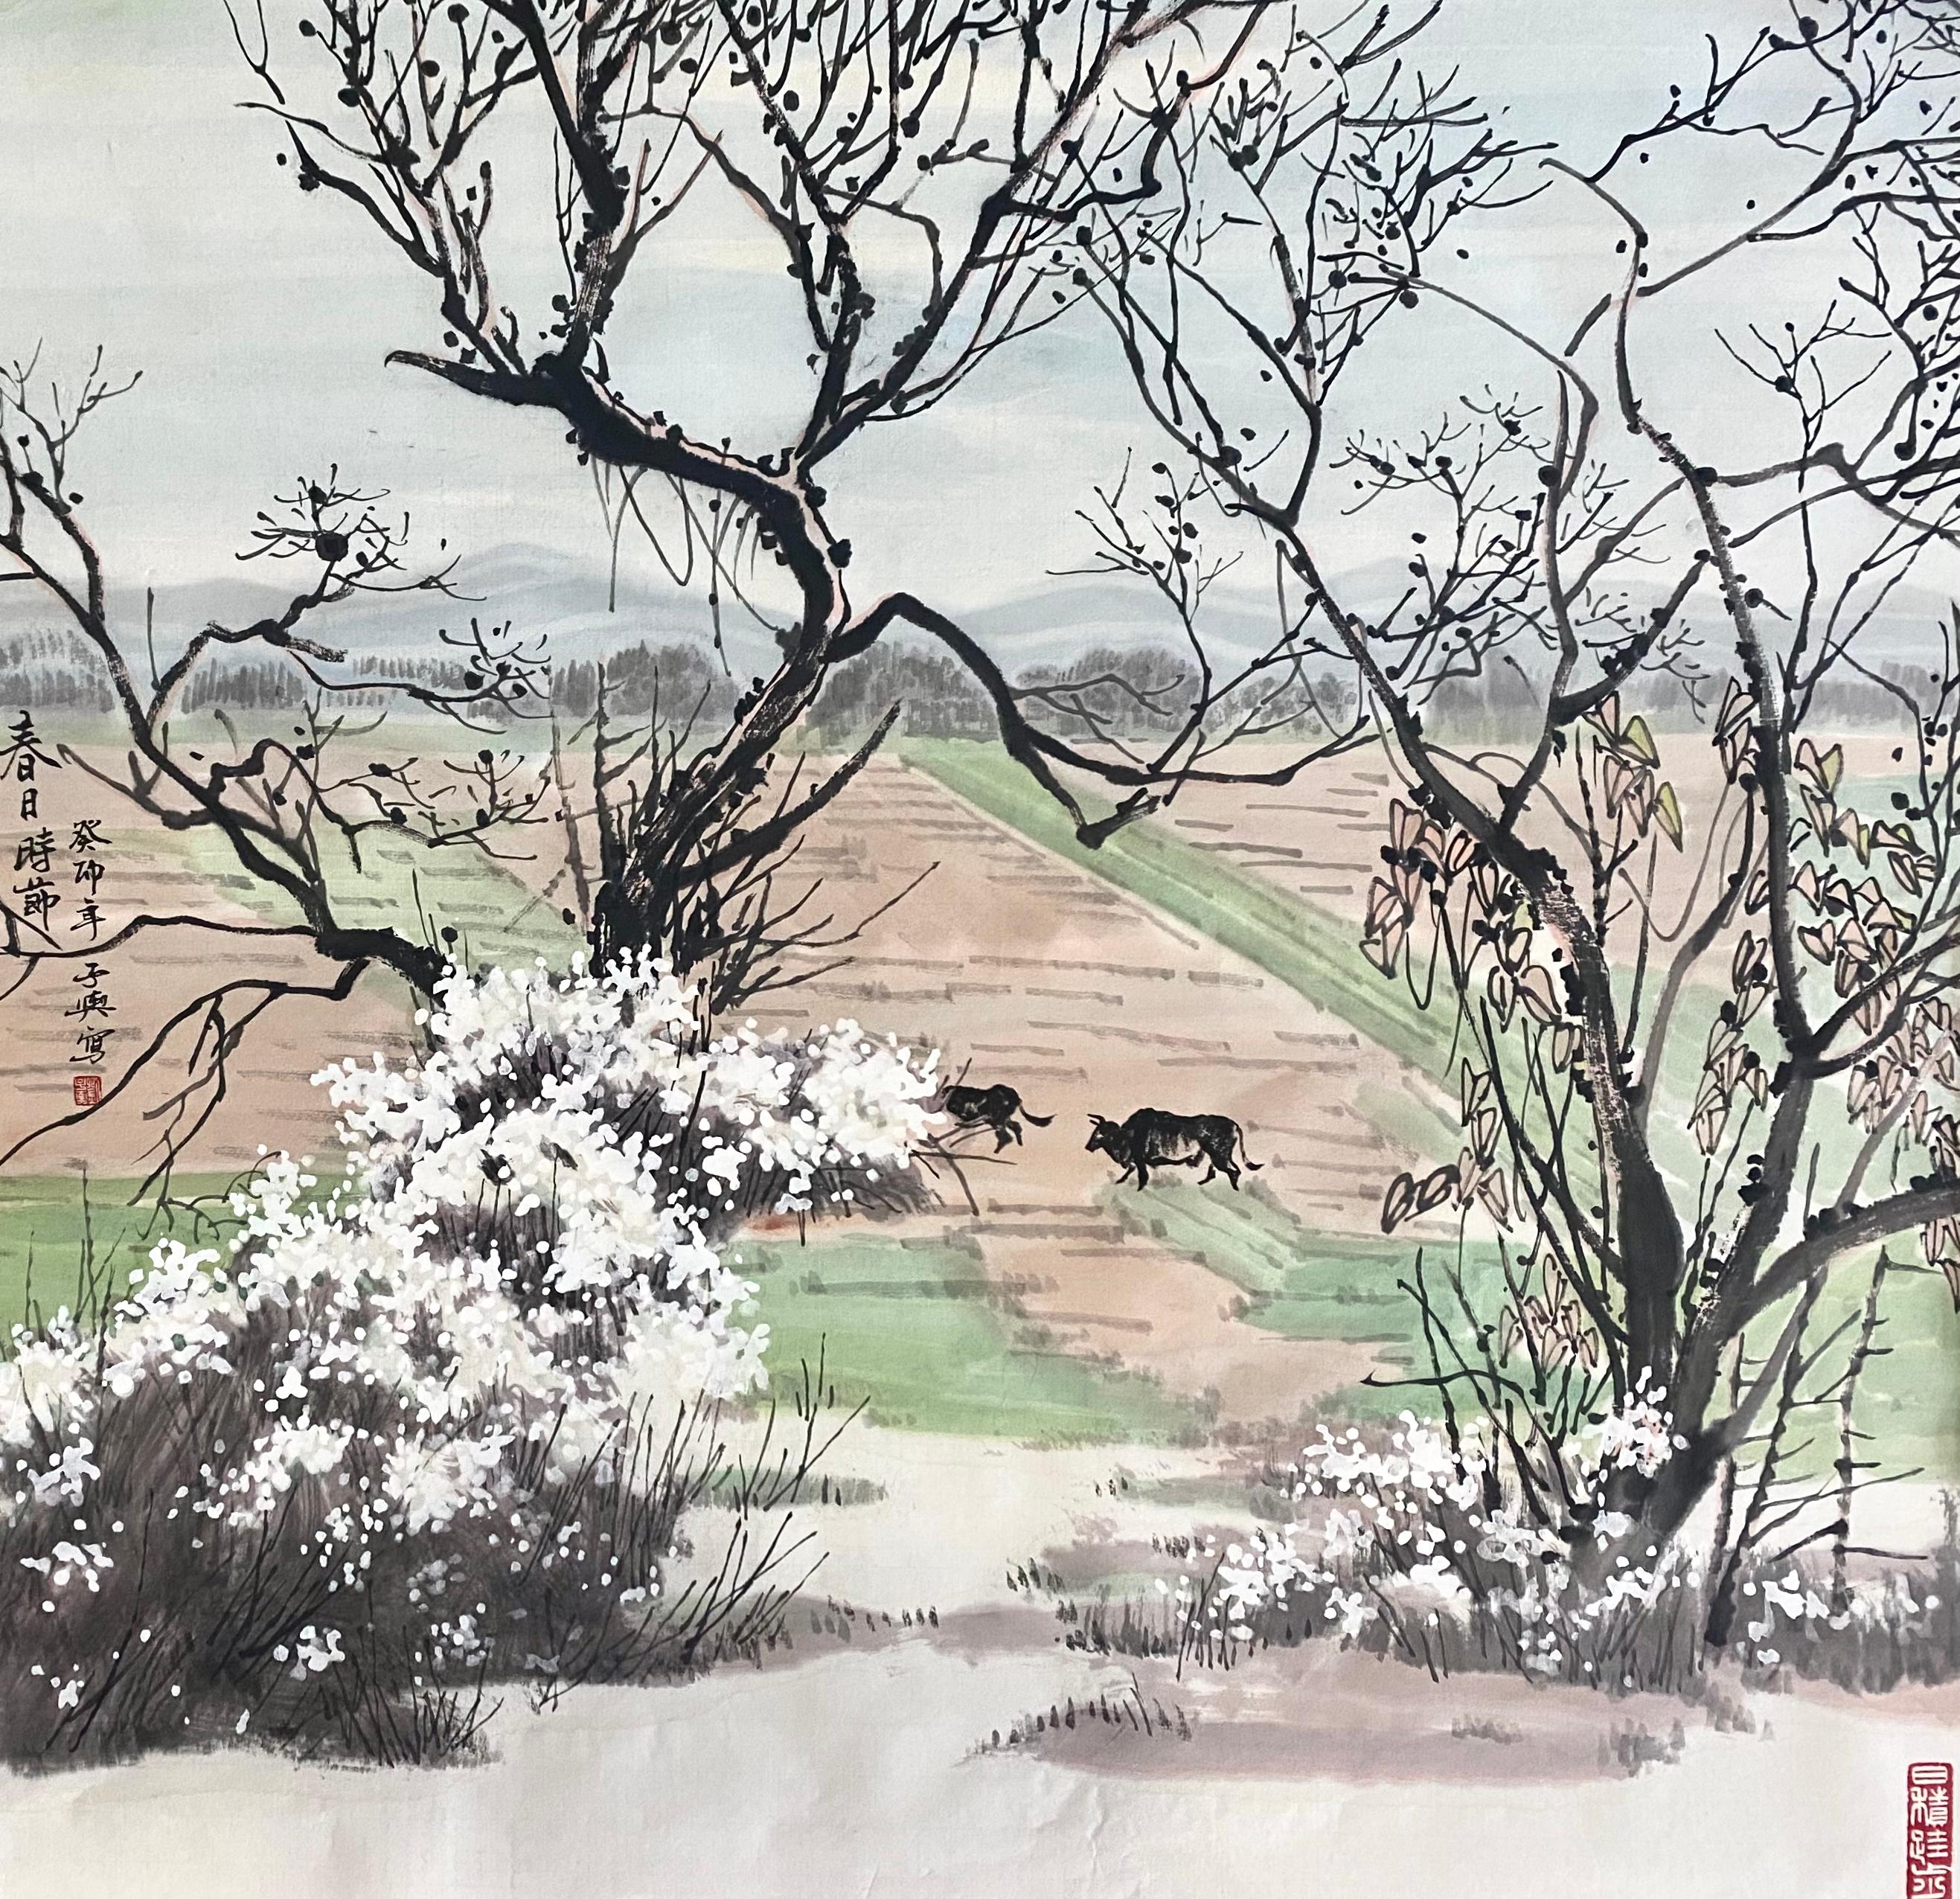 Tinte auf Papier

Liu Ziyu ist ein 1978 geborener chinesischer Künstler, der in Peking lebt und arbeitet. Er schloss 2020 sein Studium an der Moskauer Staatlichen Stroganow-Akademie für Kunst und Industrie mit einem Doktortitel ab. Er ist Mitglied